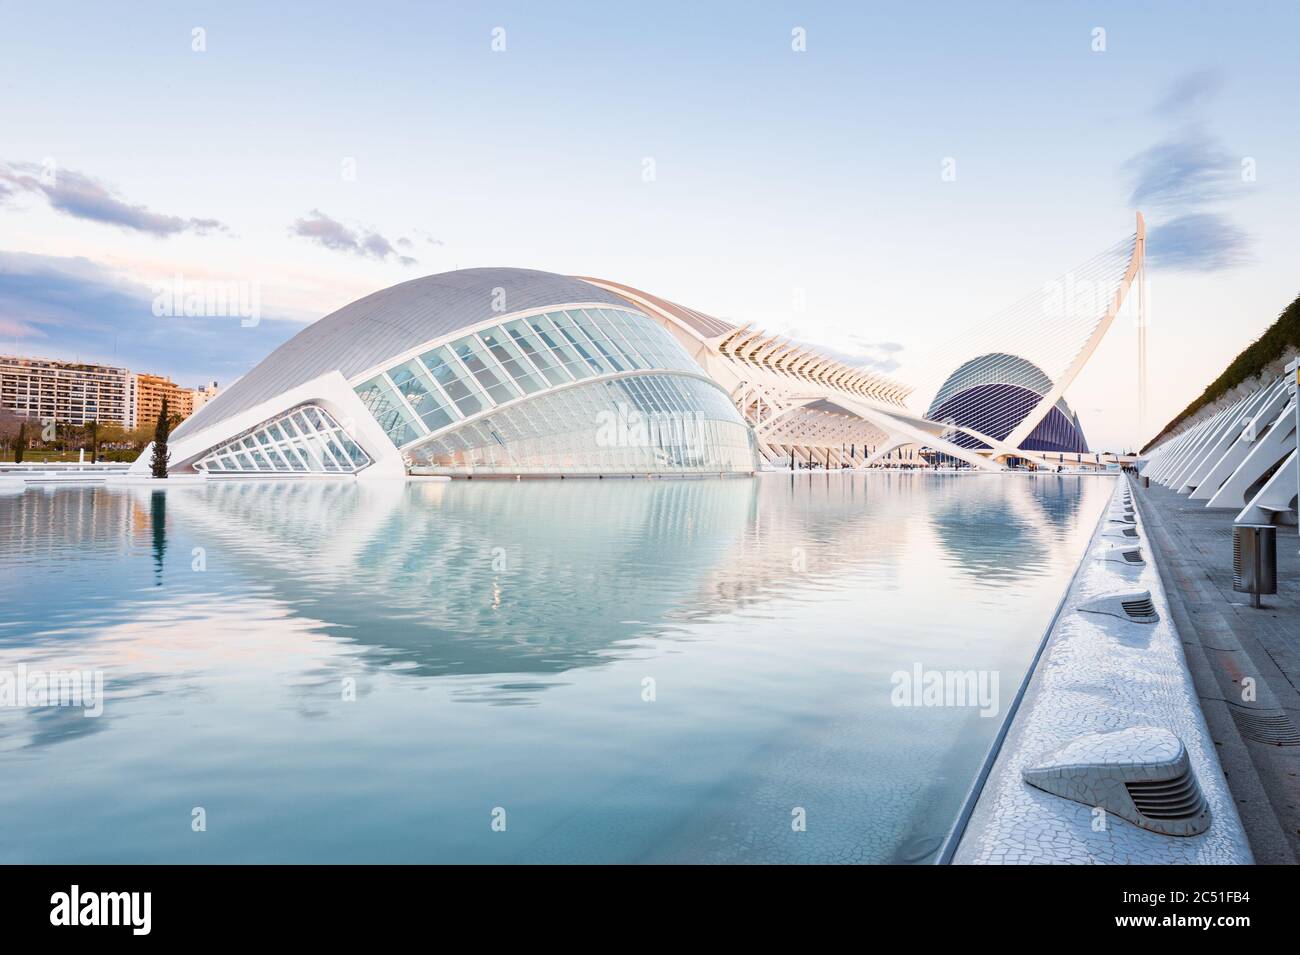 Arquitectura moderna y llamativa, tal como se muestra en el diseño de los edificios de la Ciudad de las Artes y la Ciencia de Valencia España Foto de stock